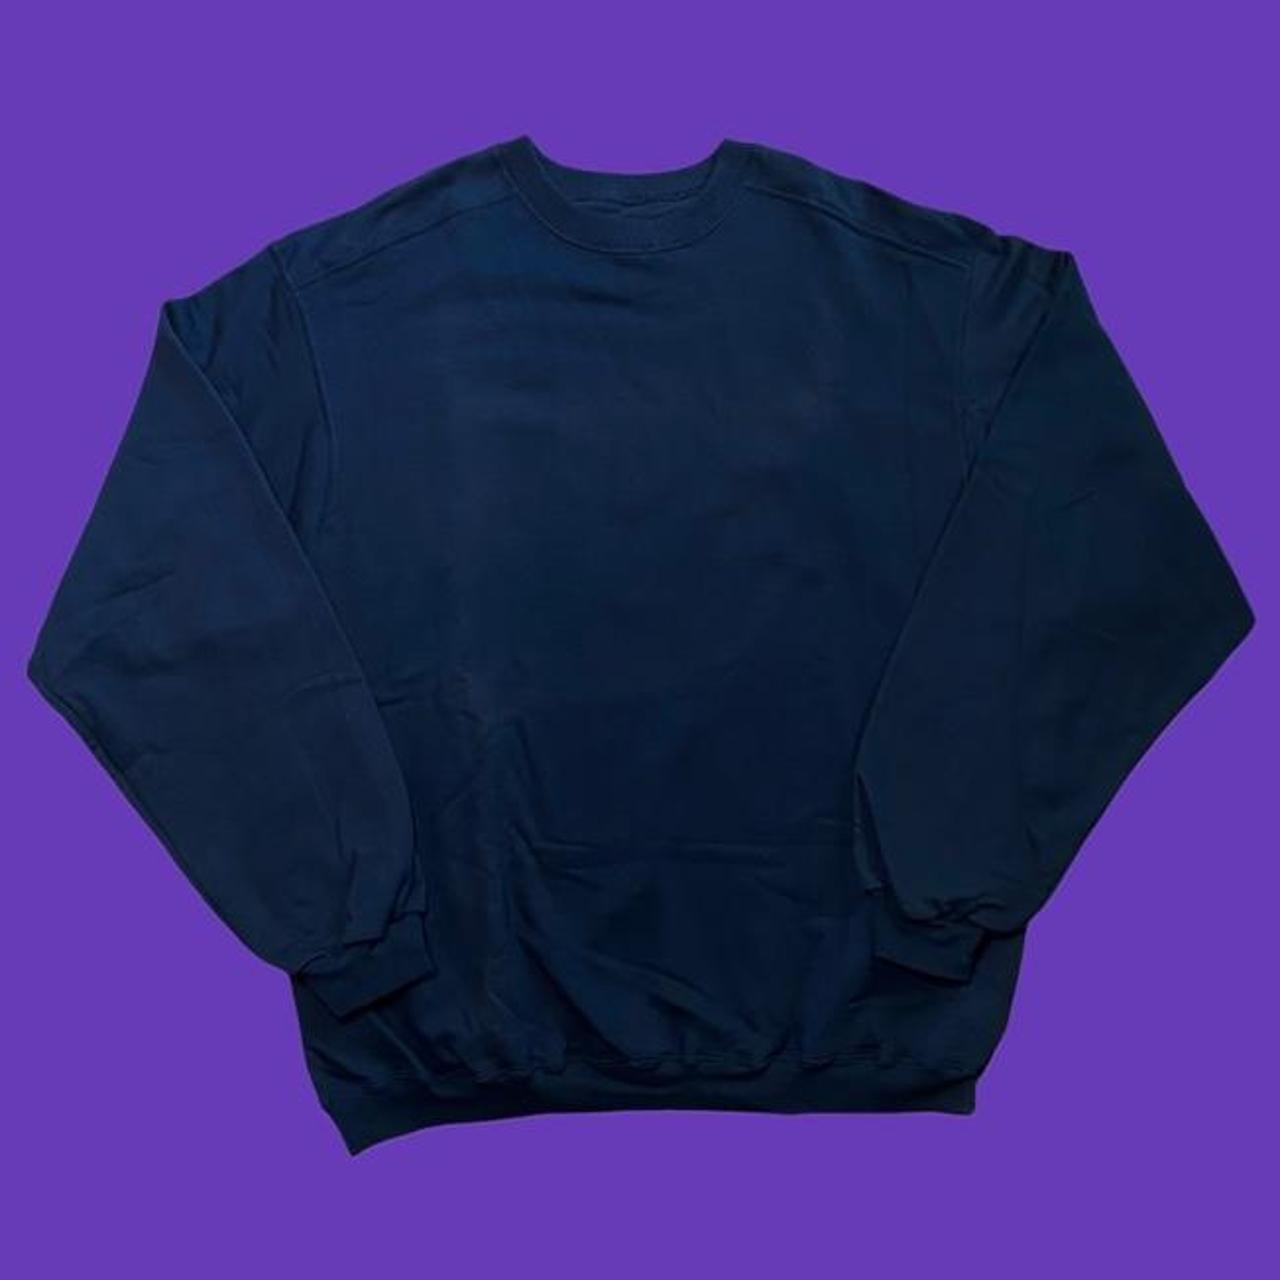 Vintage Champion Reverse Weave Sweater! 🖤#N#It’s a... - Depop